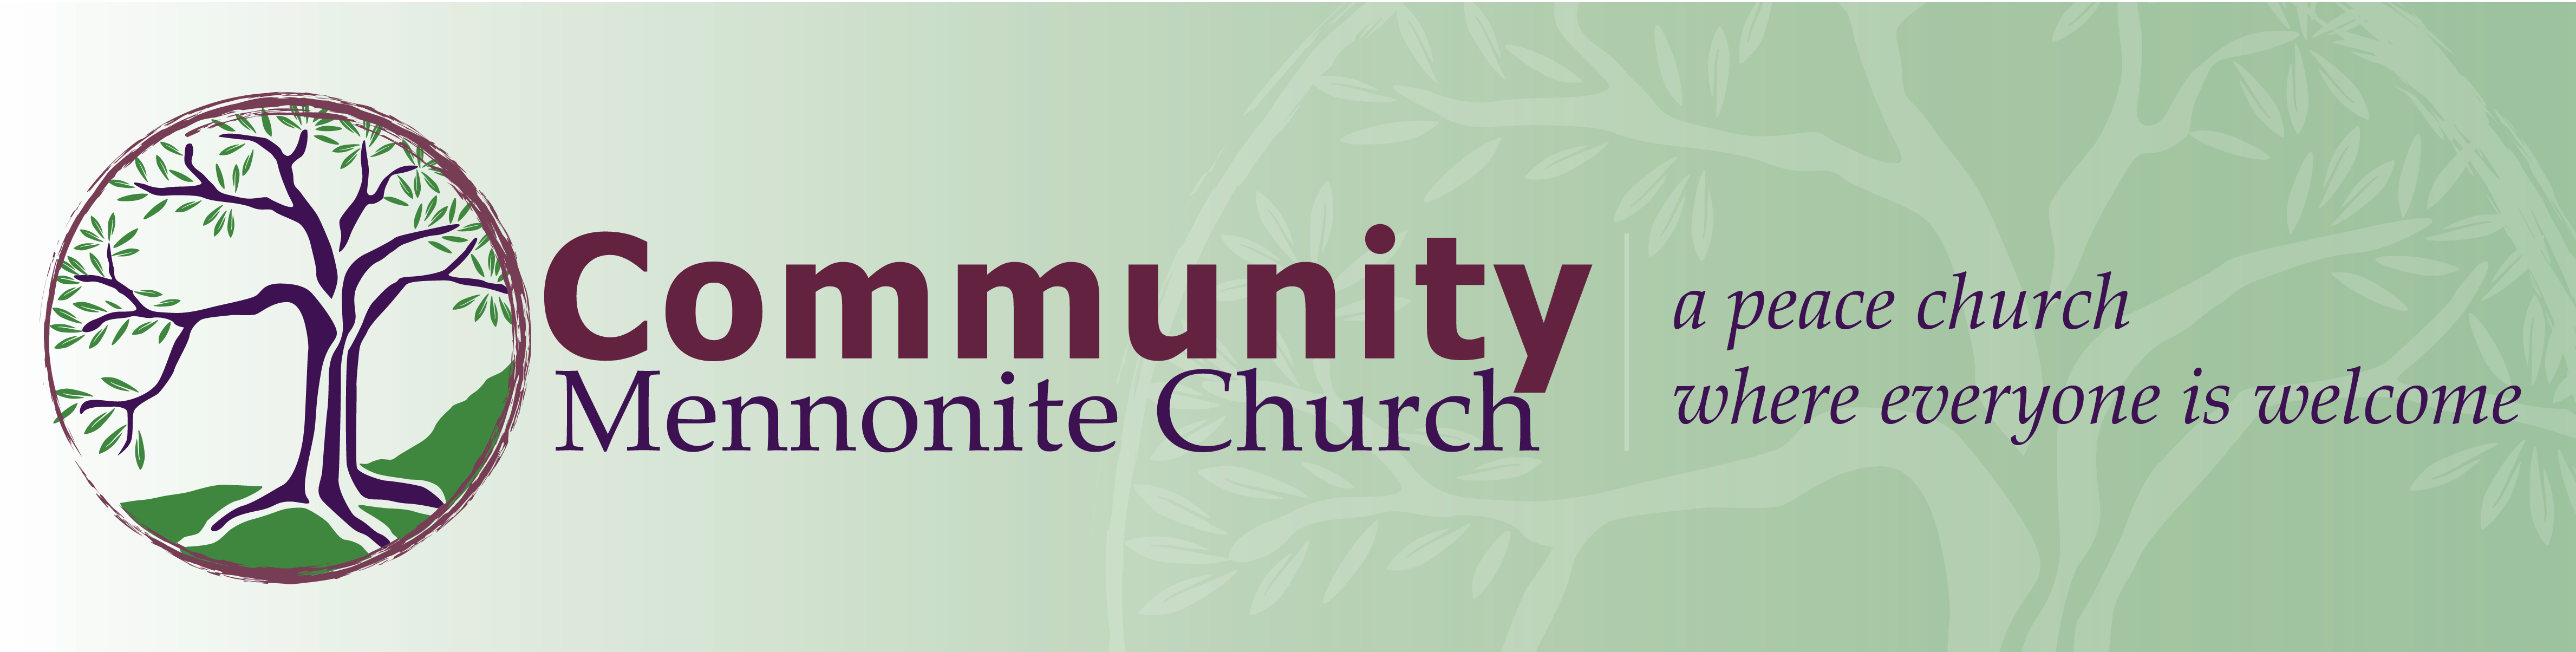 Community Mennonite Church